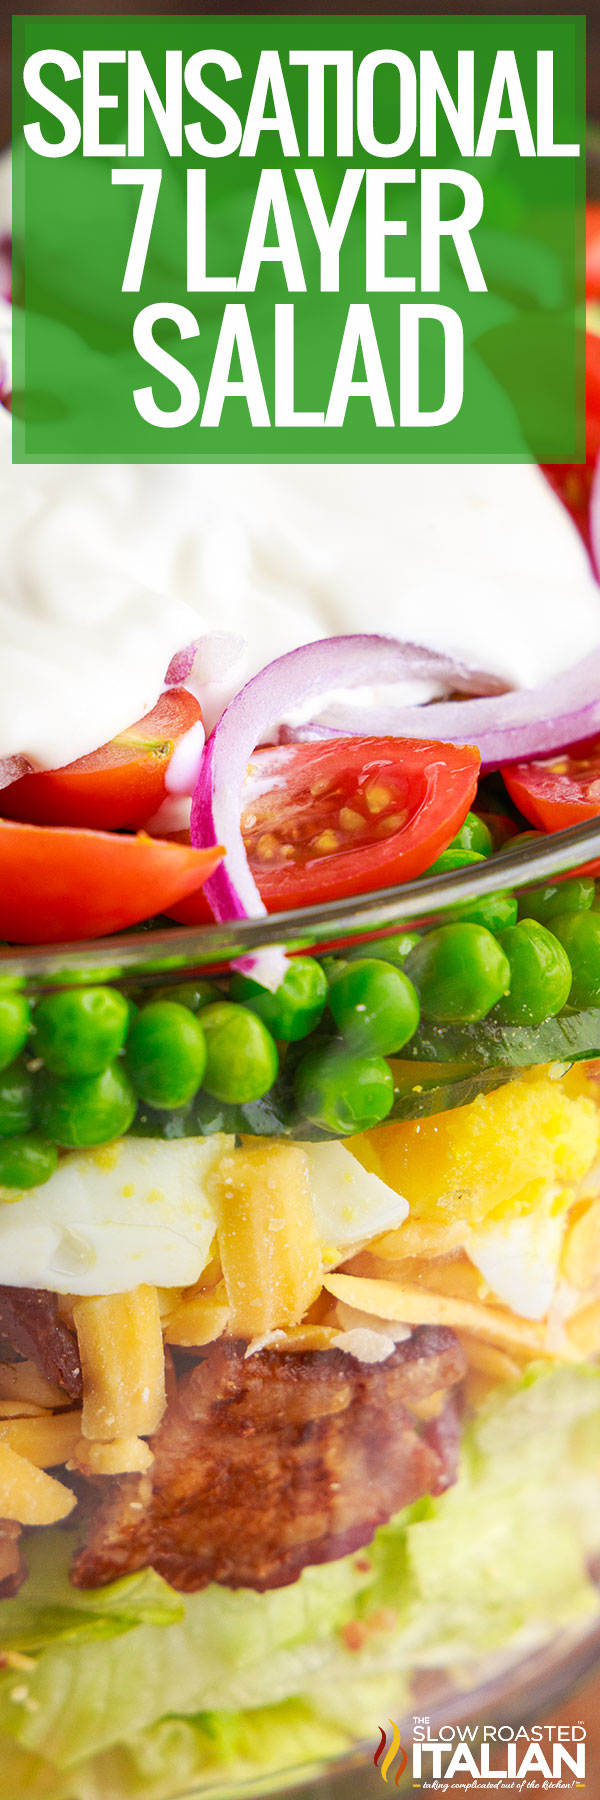 Sensational 7 Layer Salad closeup